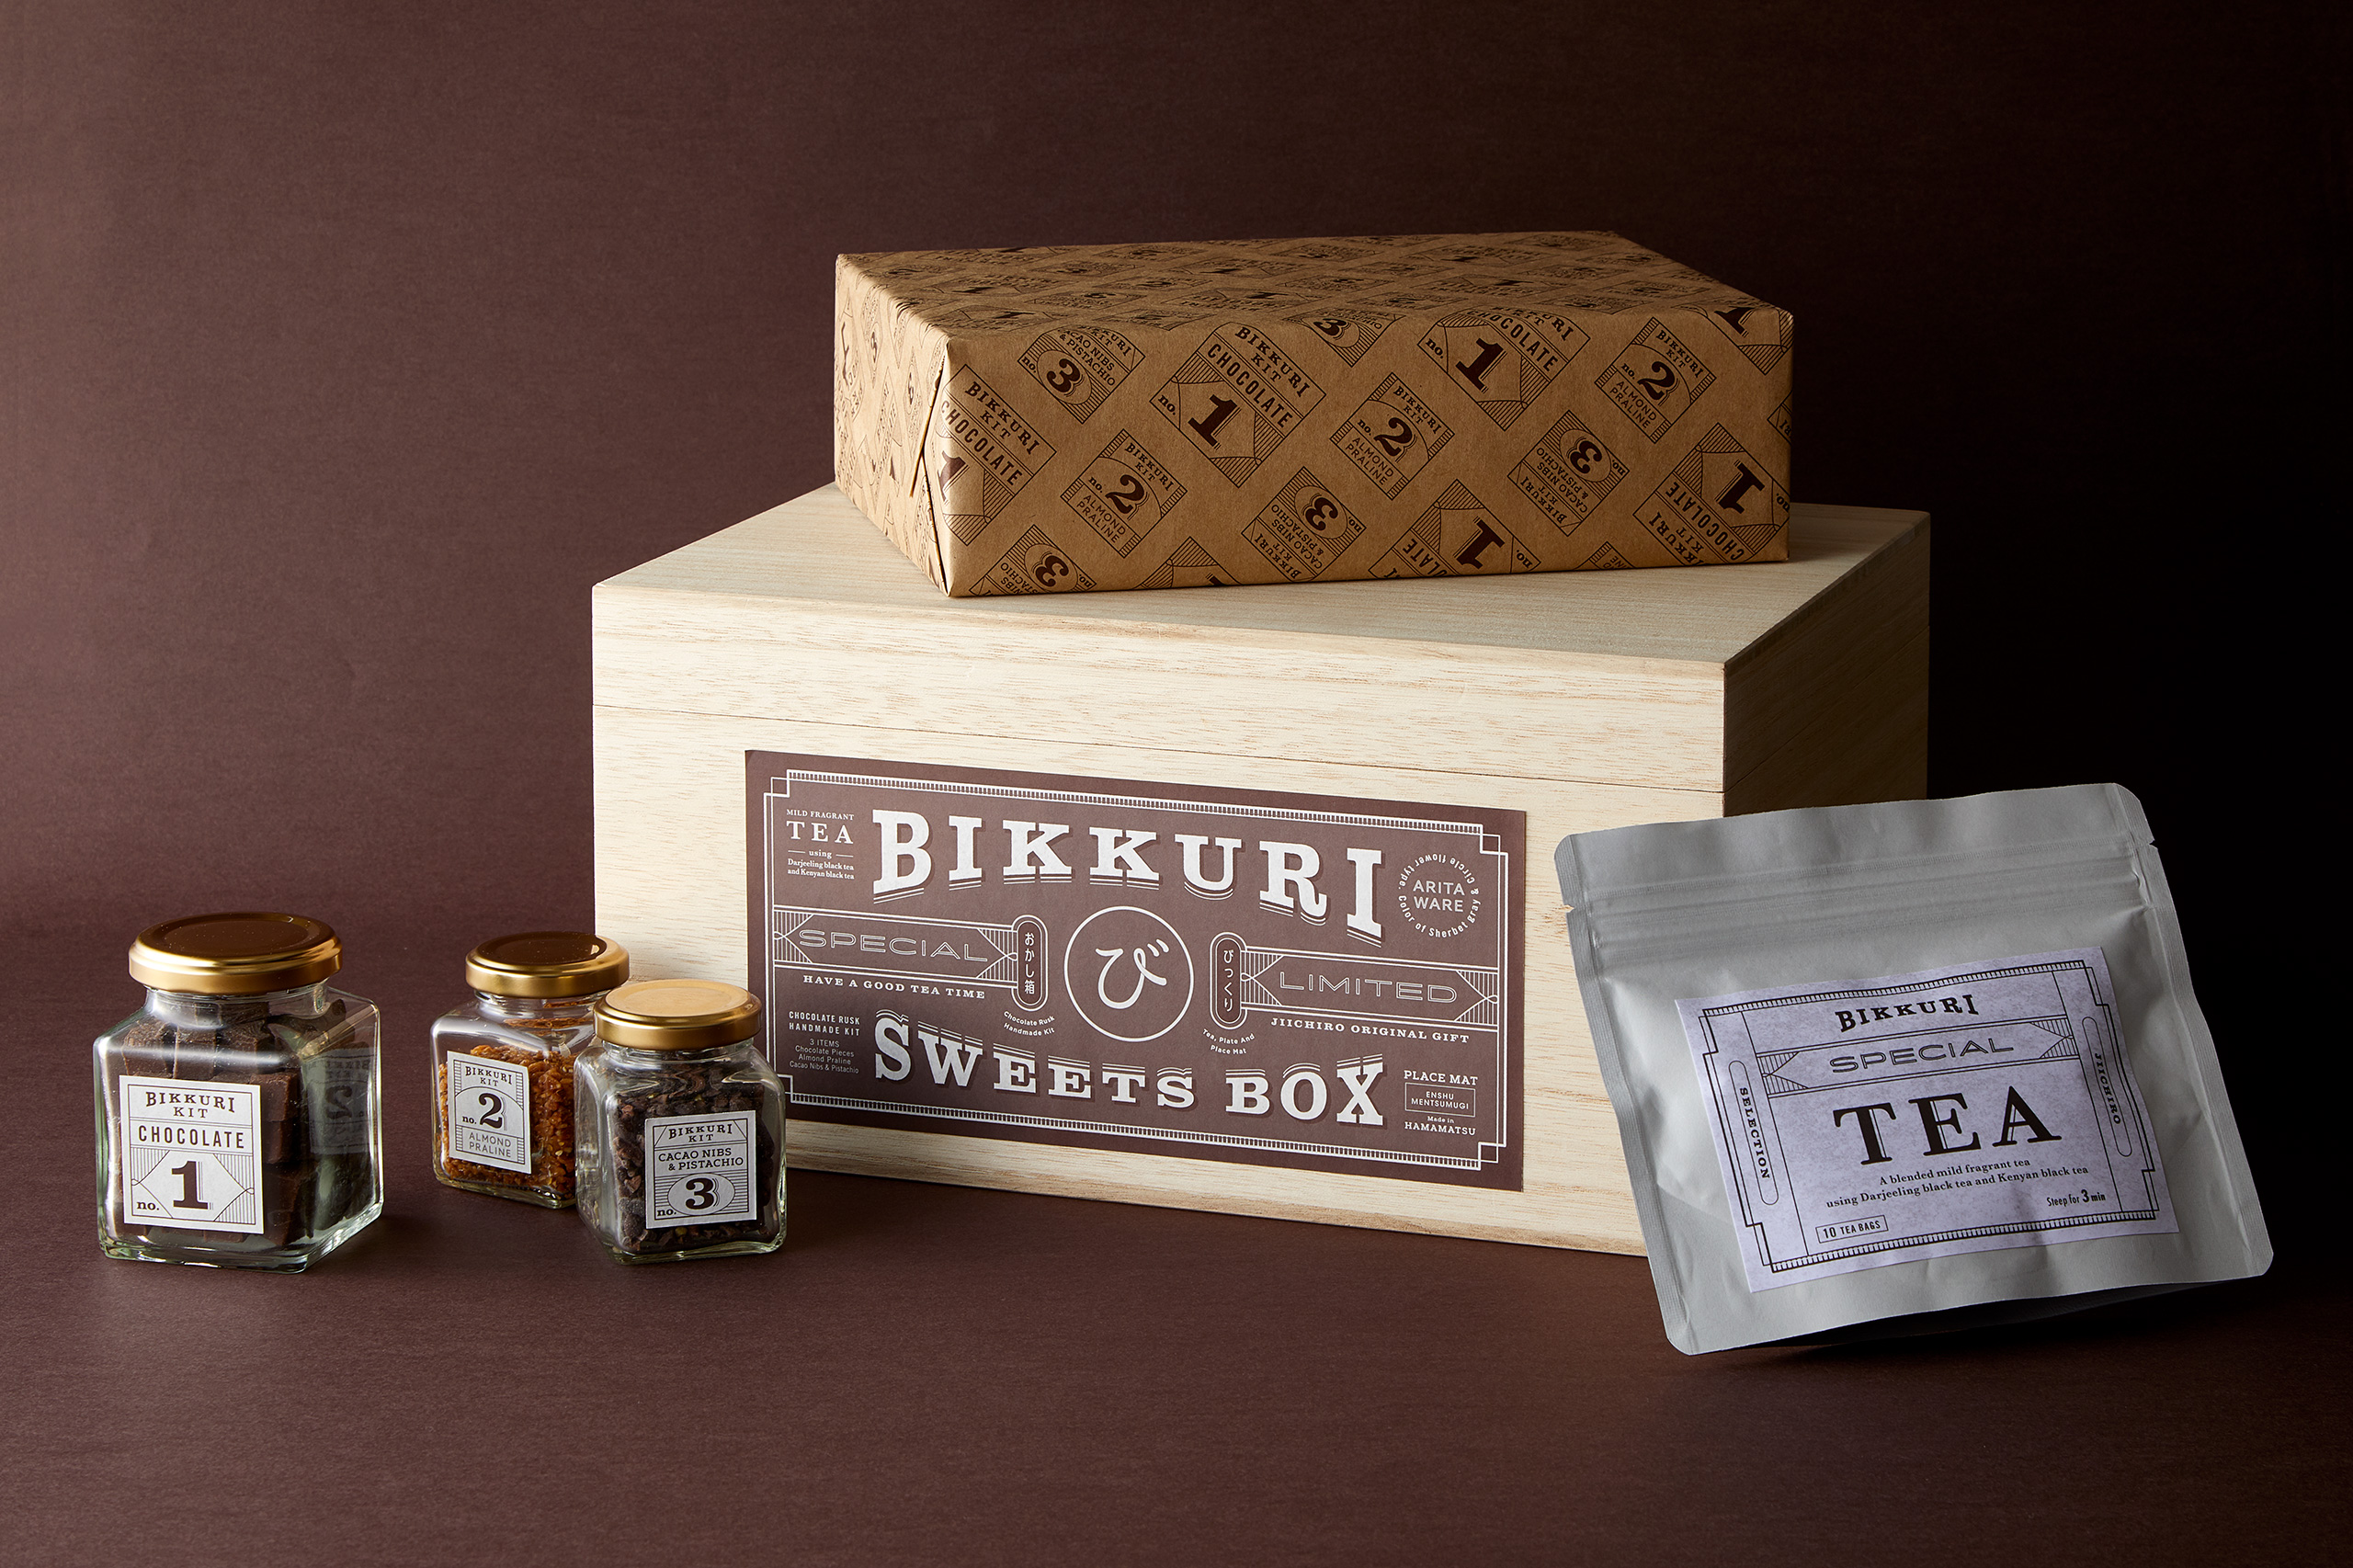 package Jiichiro Bikkuri Sweets Box 2019